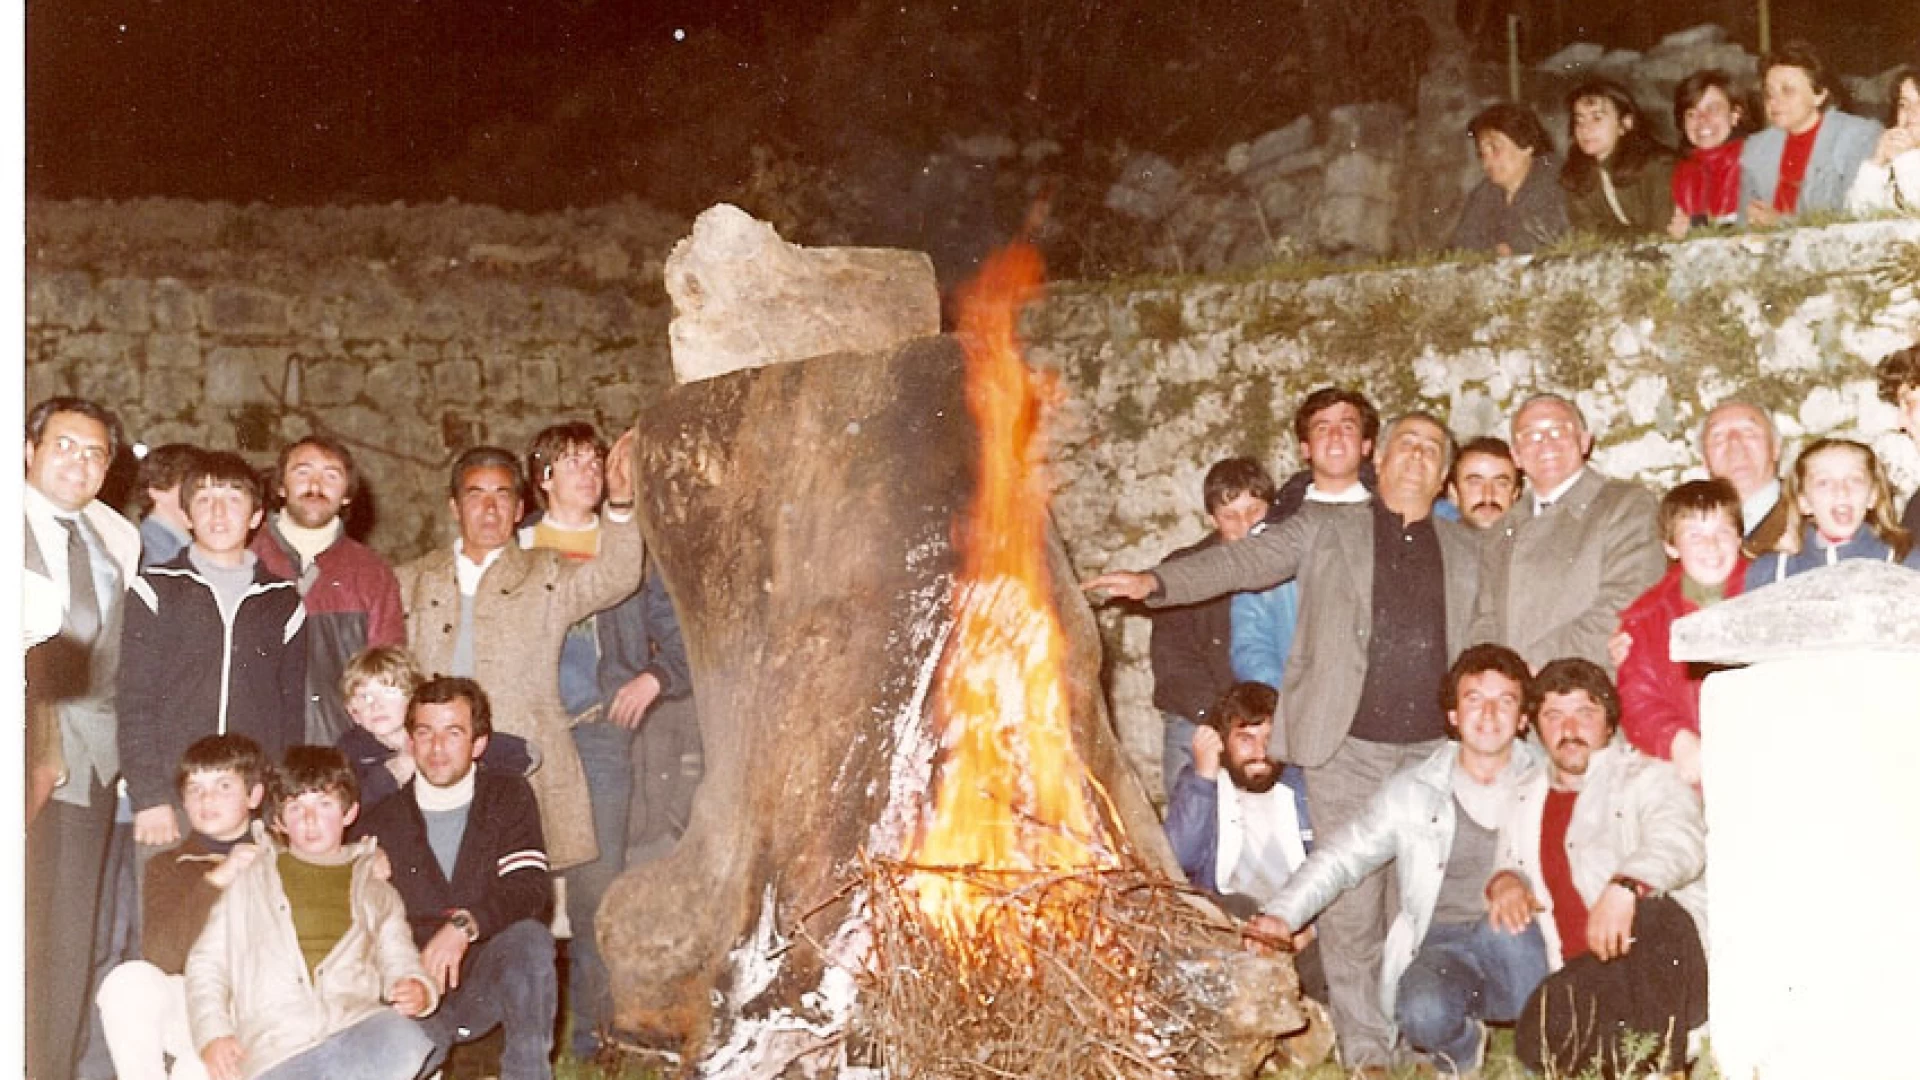 Fuòche Bbenditte: la millenaria tradizione del fuoco che si rinnova a Cerro al Volturno.